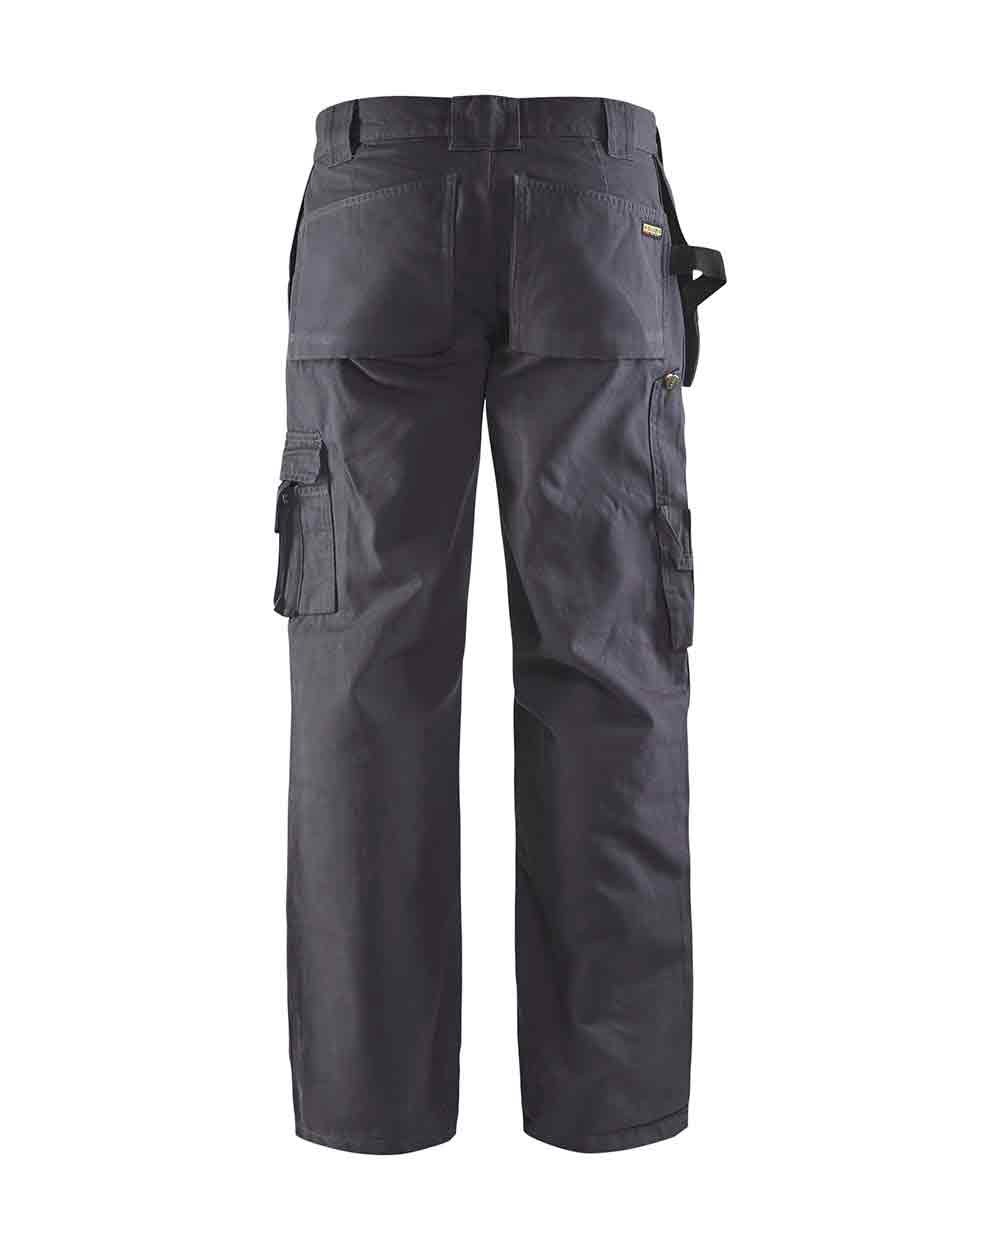 Jobman Workwear 2191 stretch work trousers HP - WorkwearOnline.shop